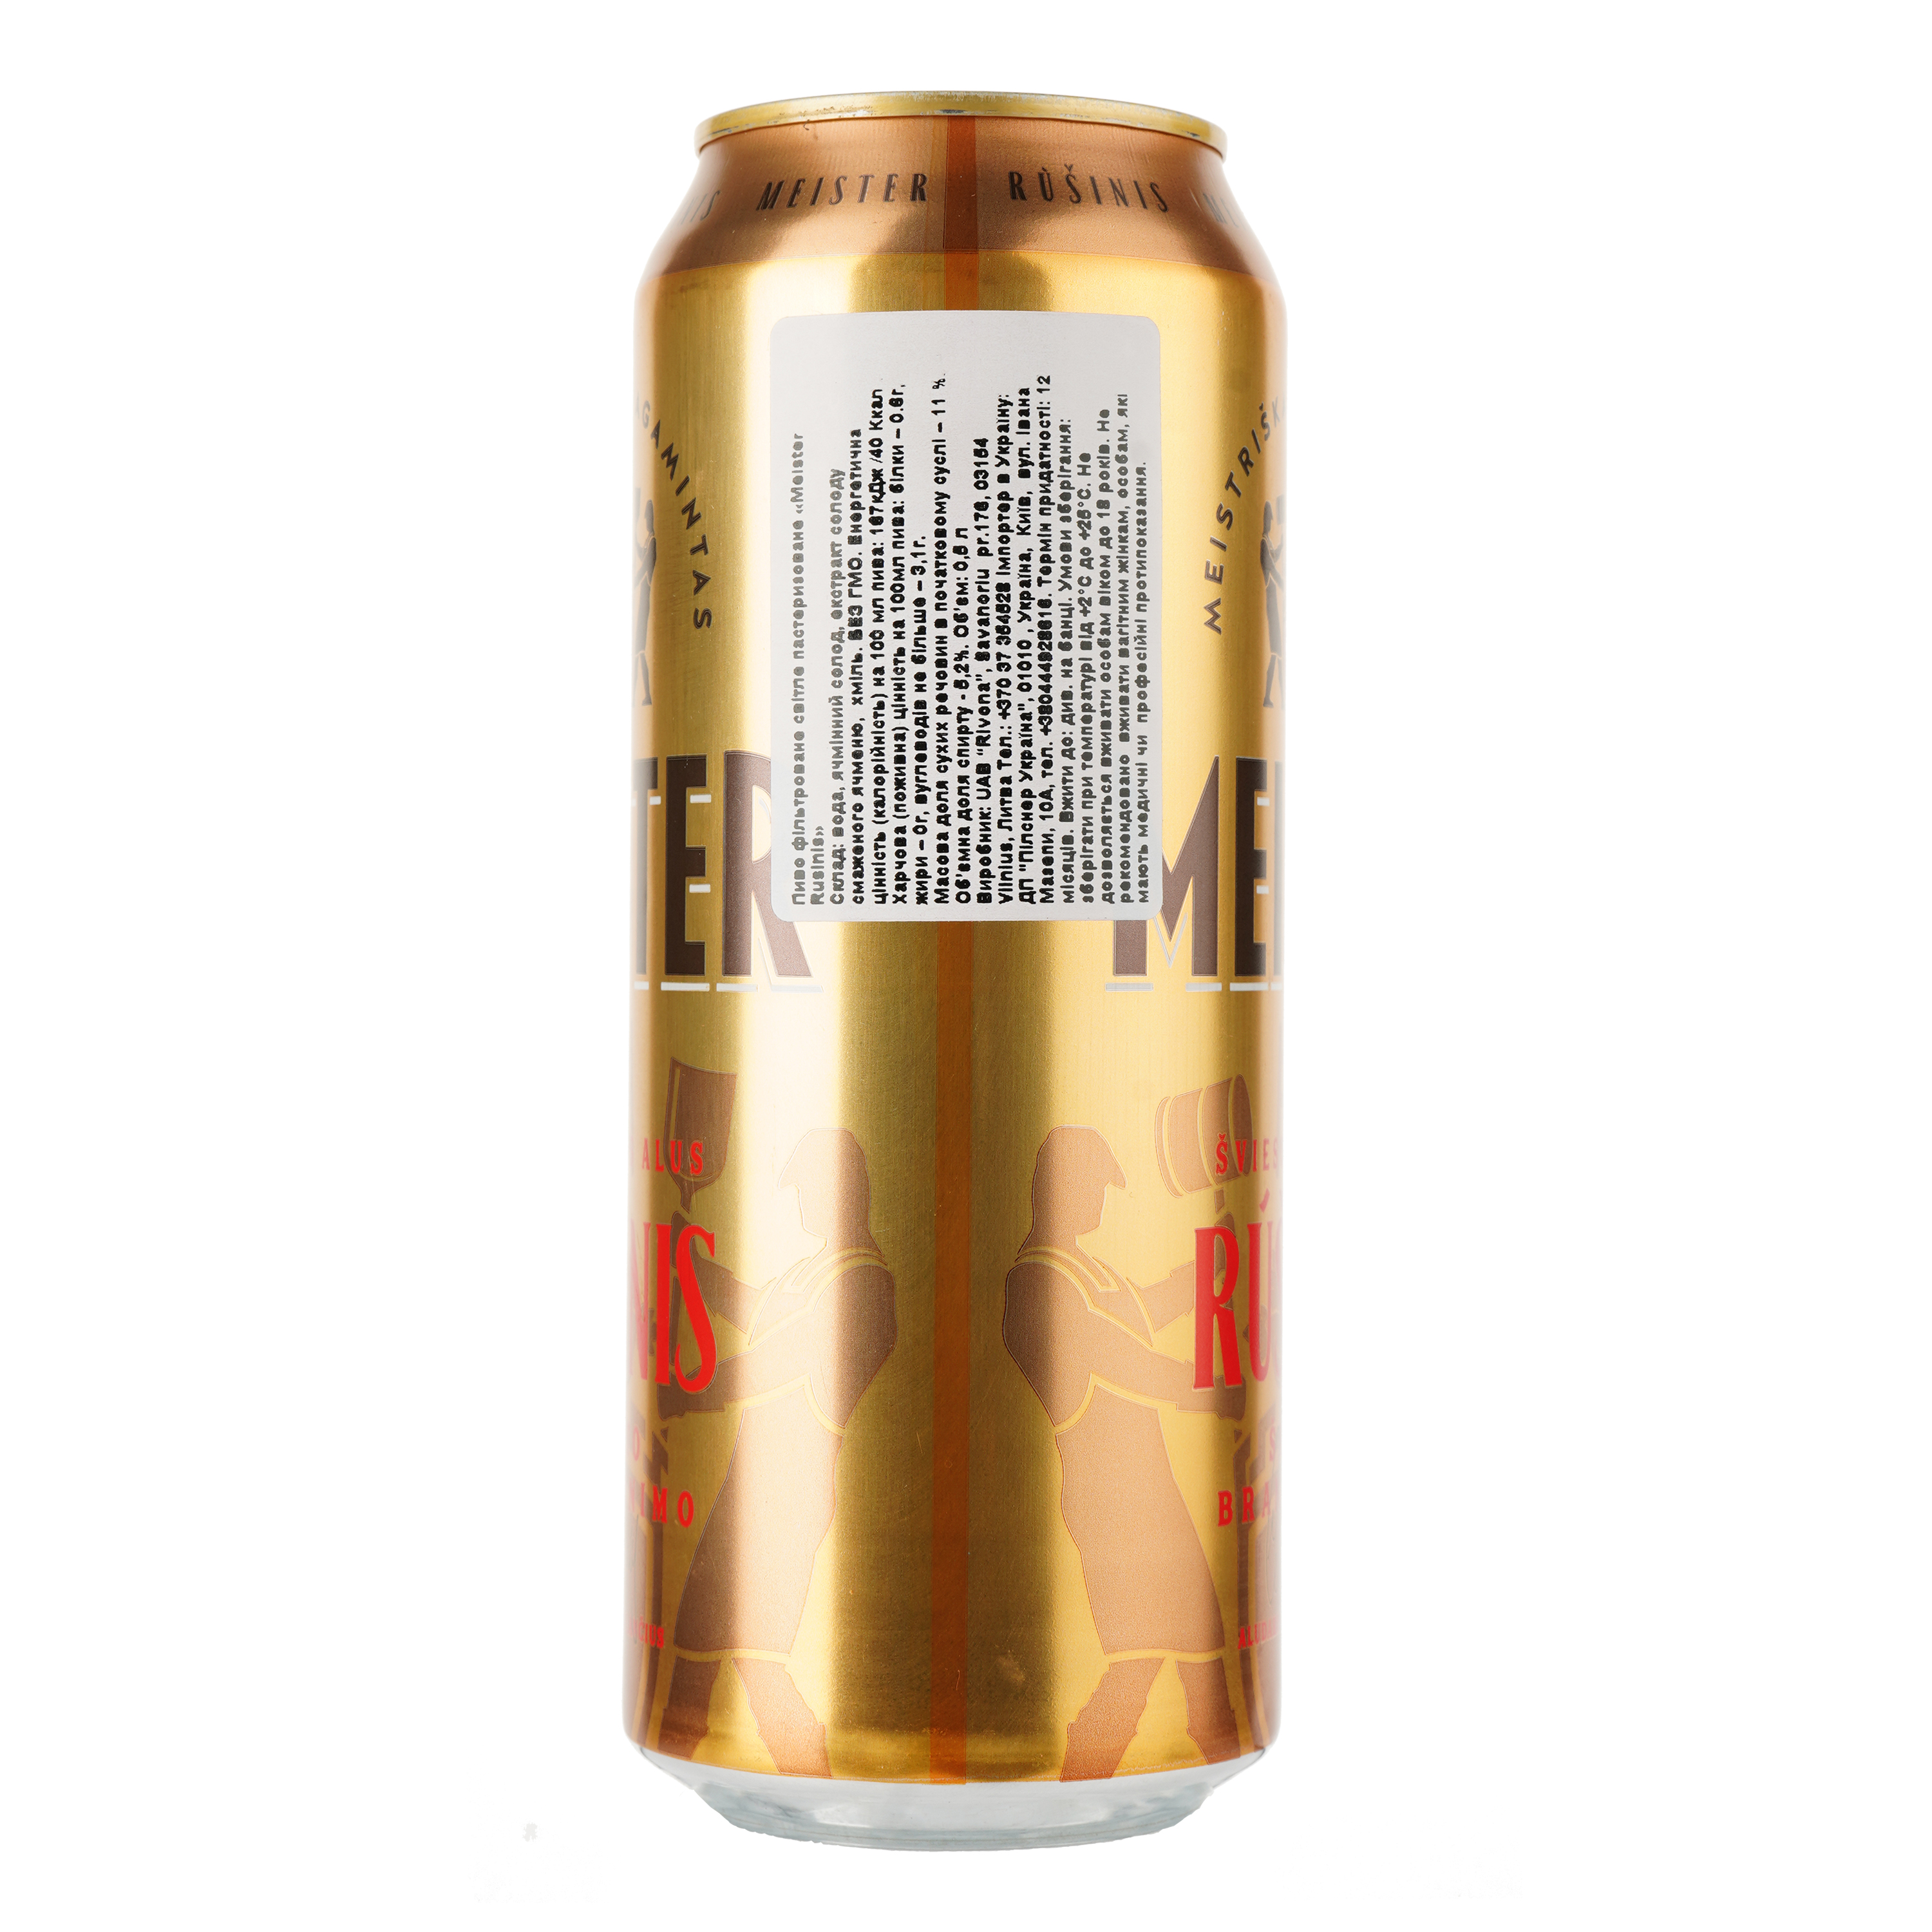 Пиво Meister Rusinis светлое, 5.2%, ж/б, 0.5 л - фото 2